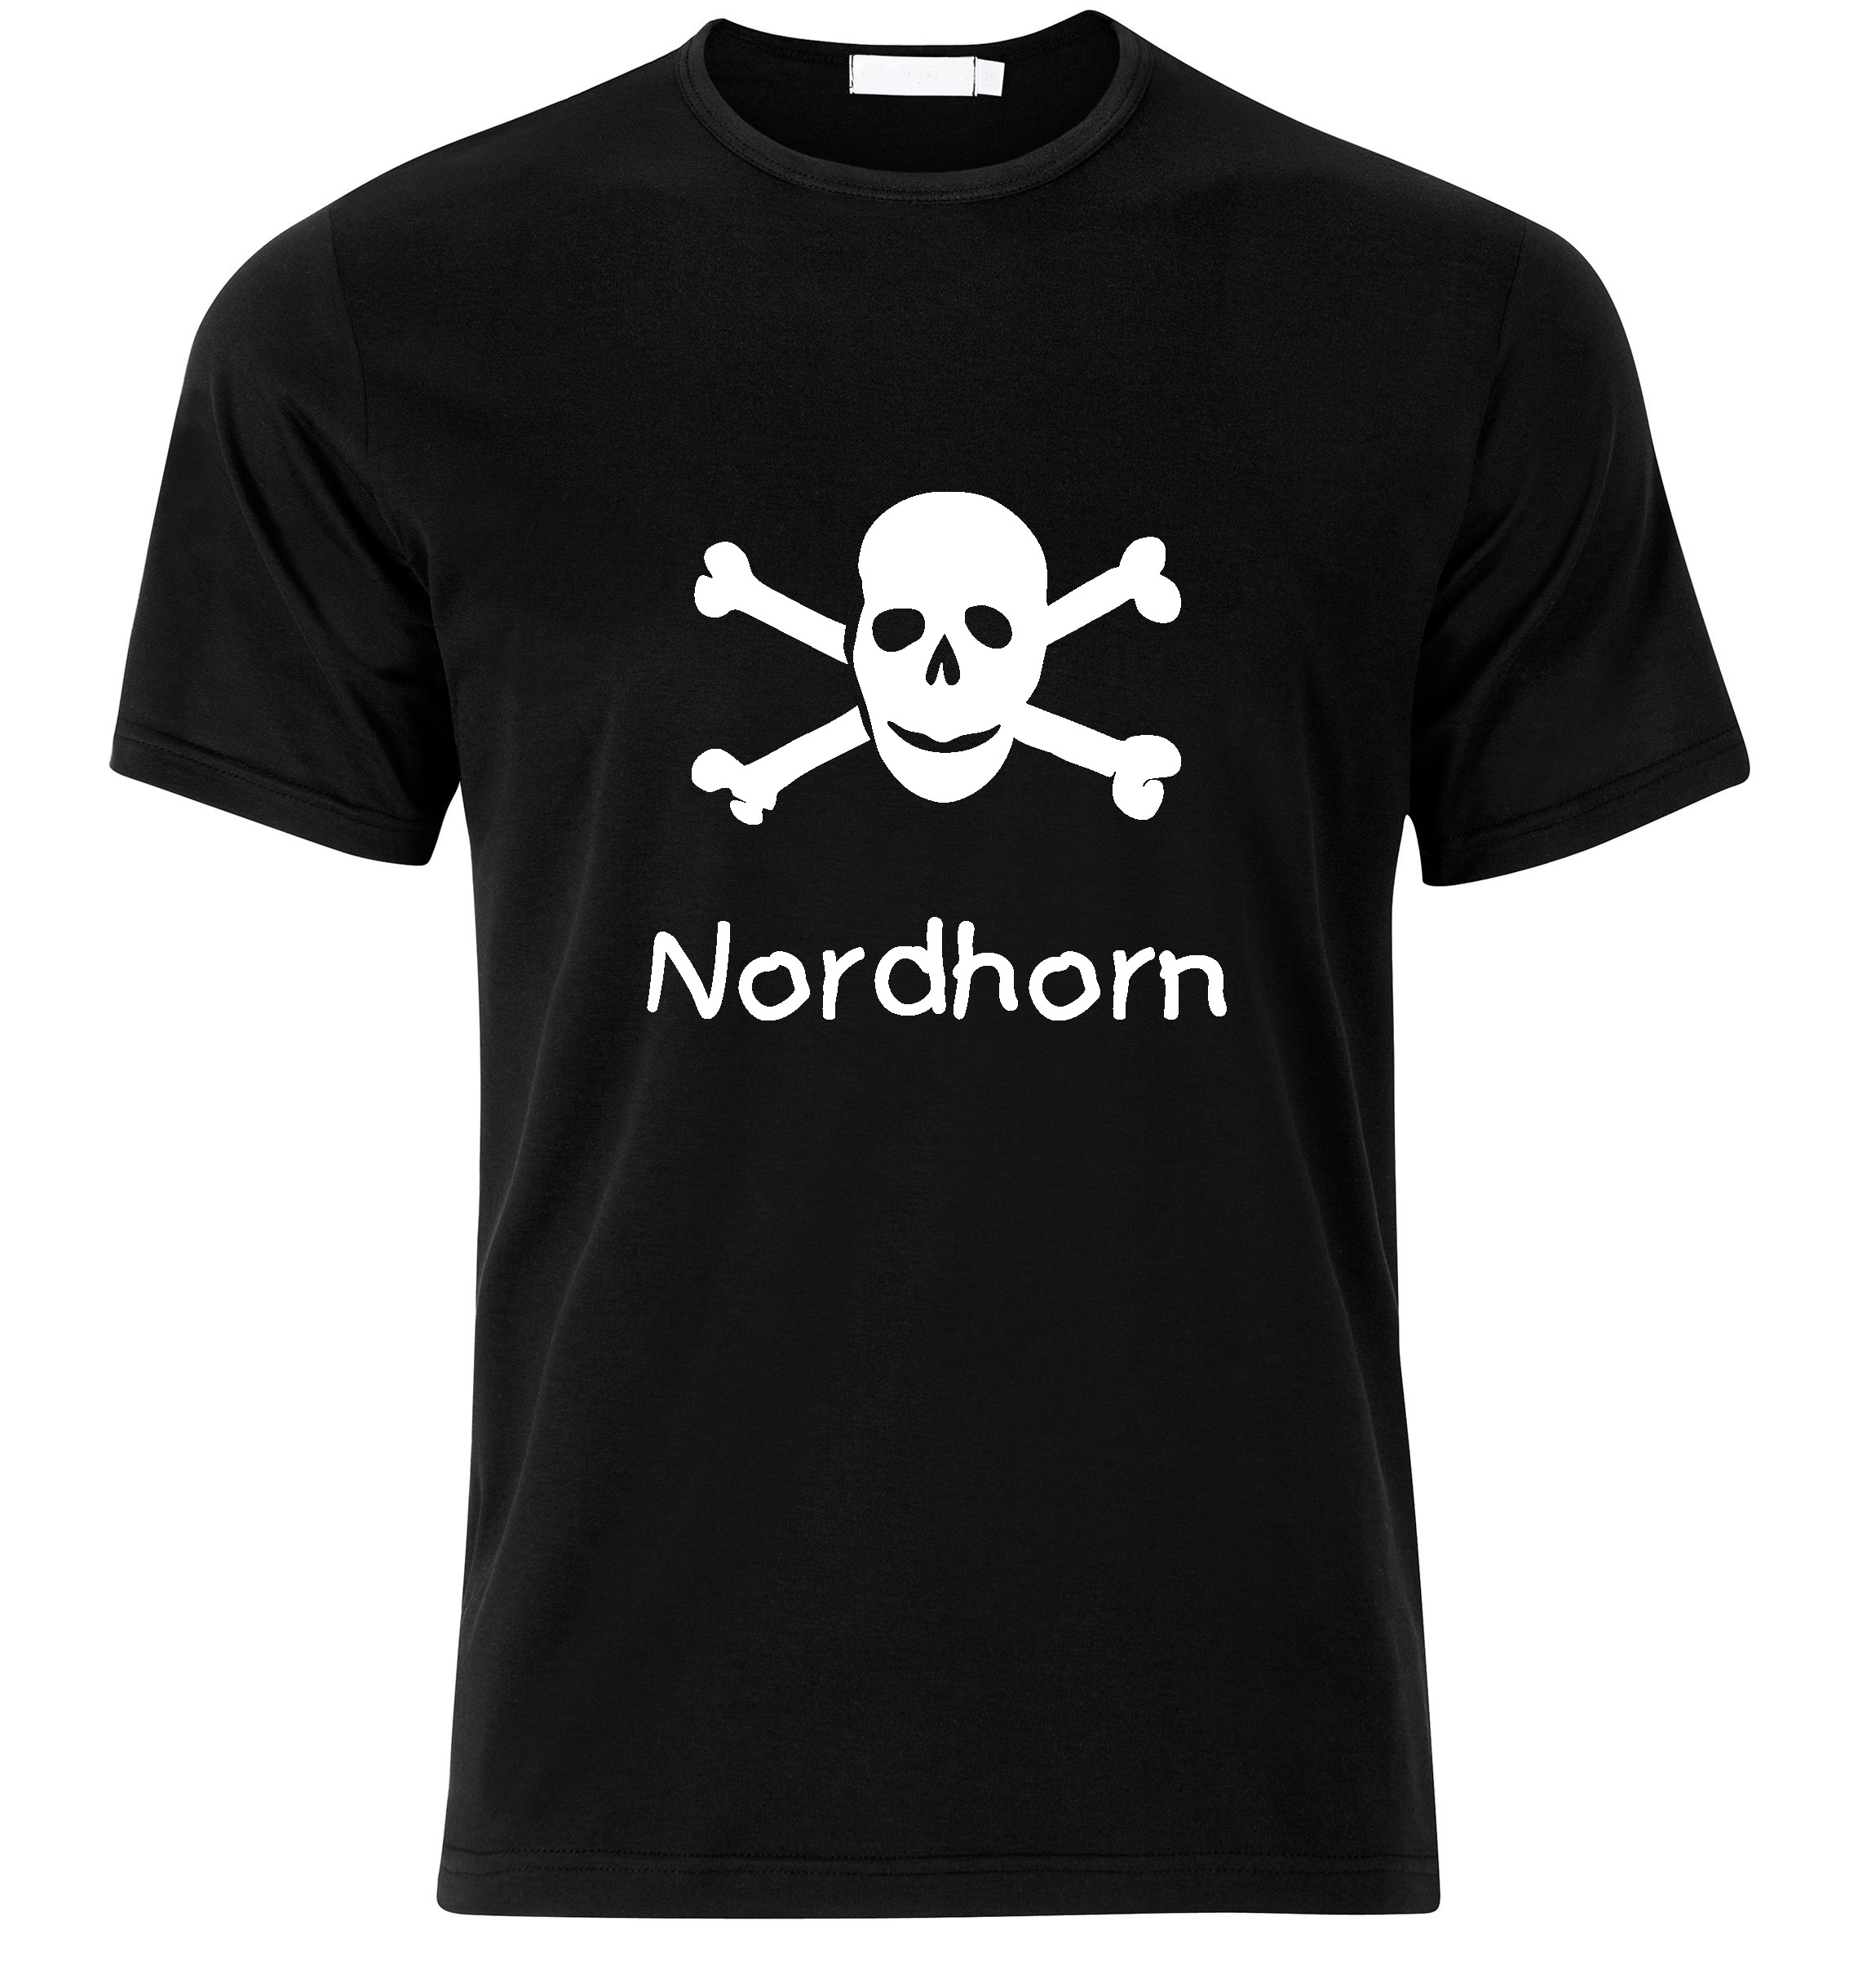 T-Shirt Nordhorn Jolly Roger, Totenkopf